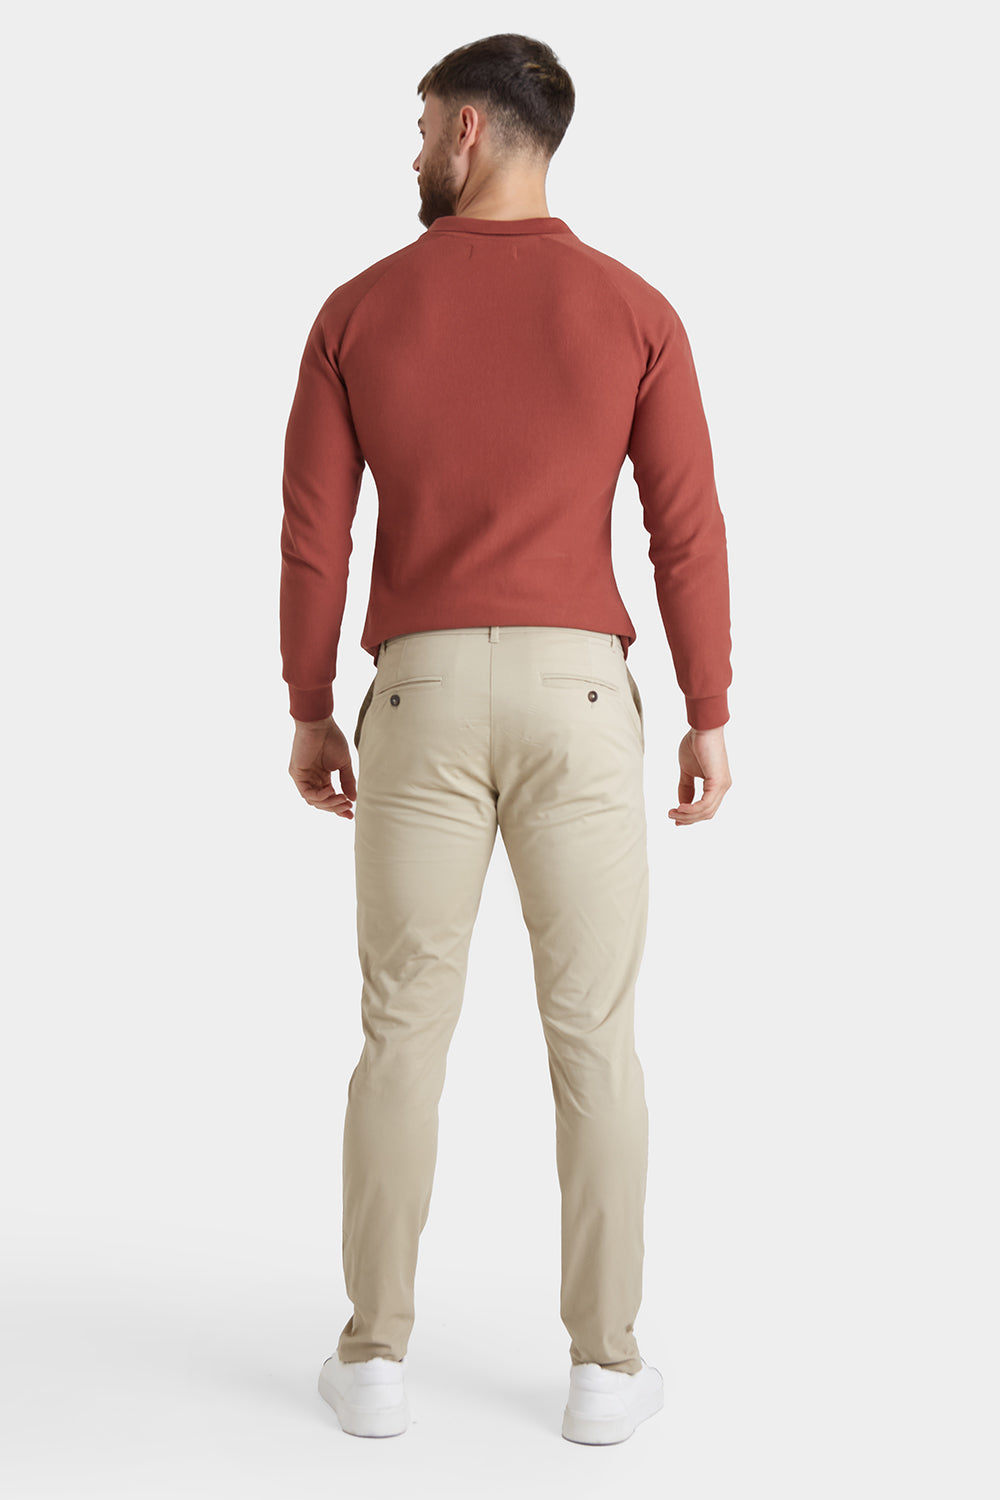 Short Men's Pants - Dress & Casual – ForTheFit.com